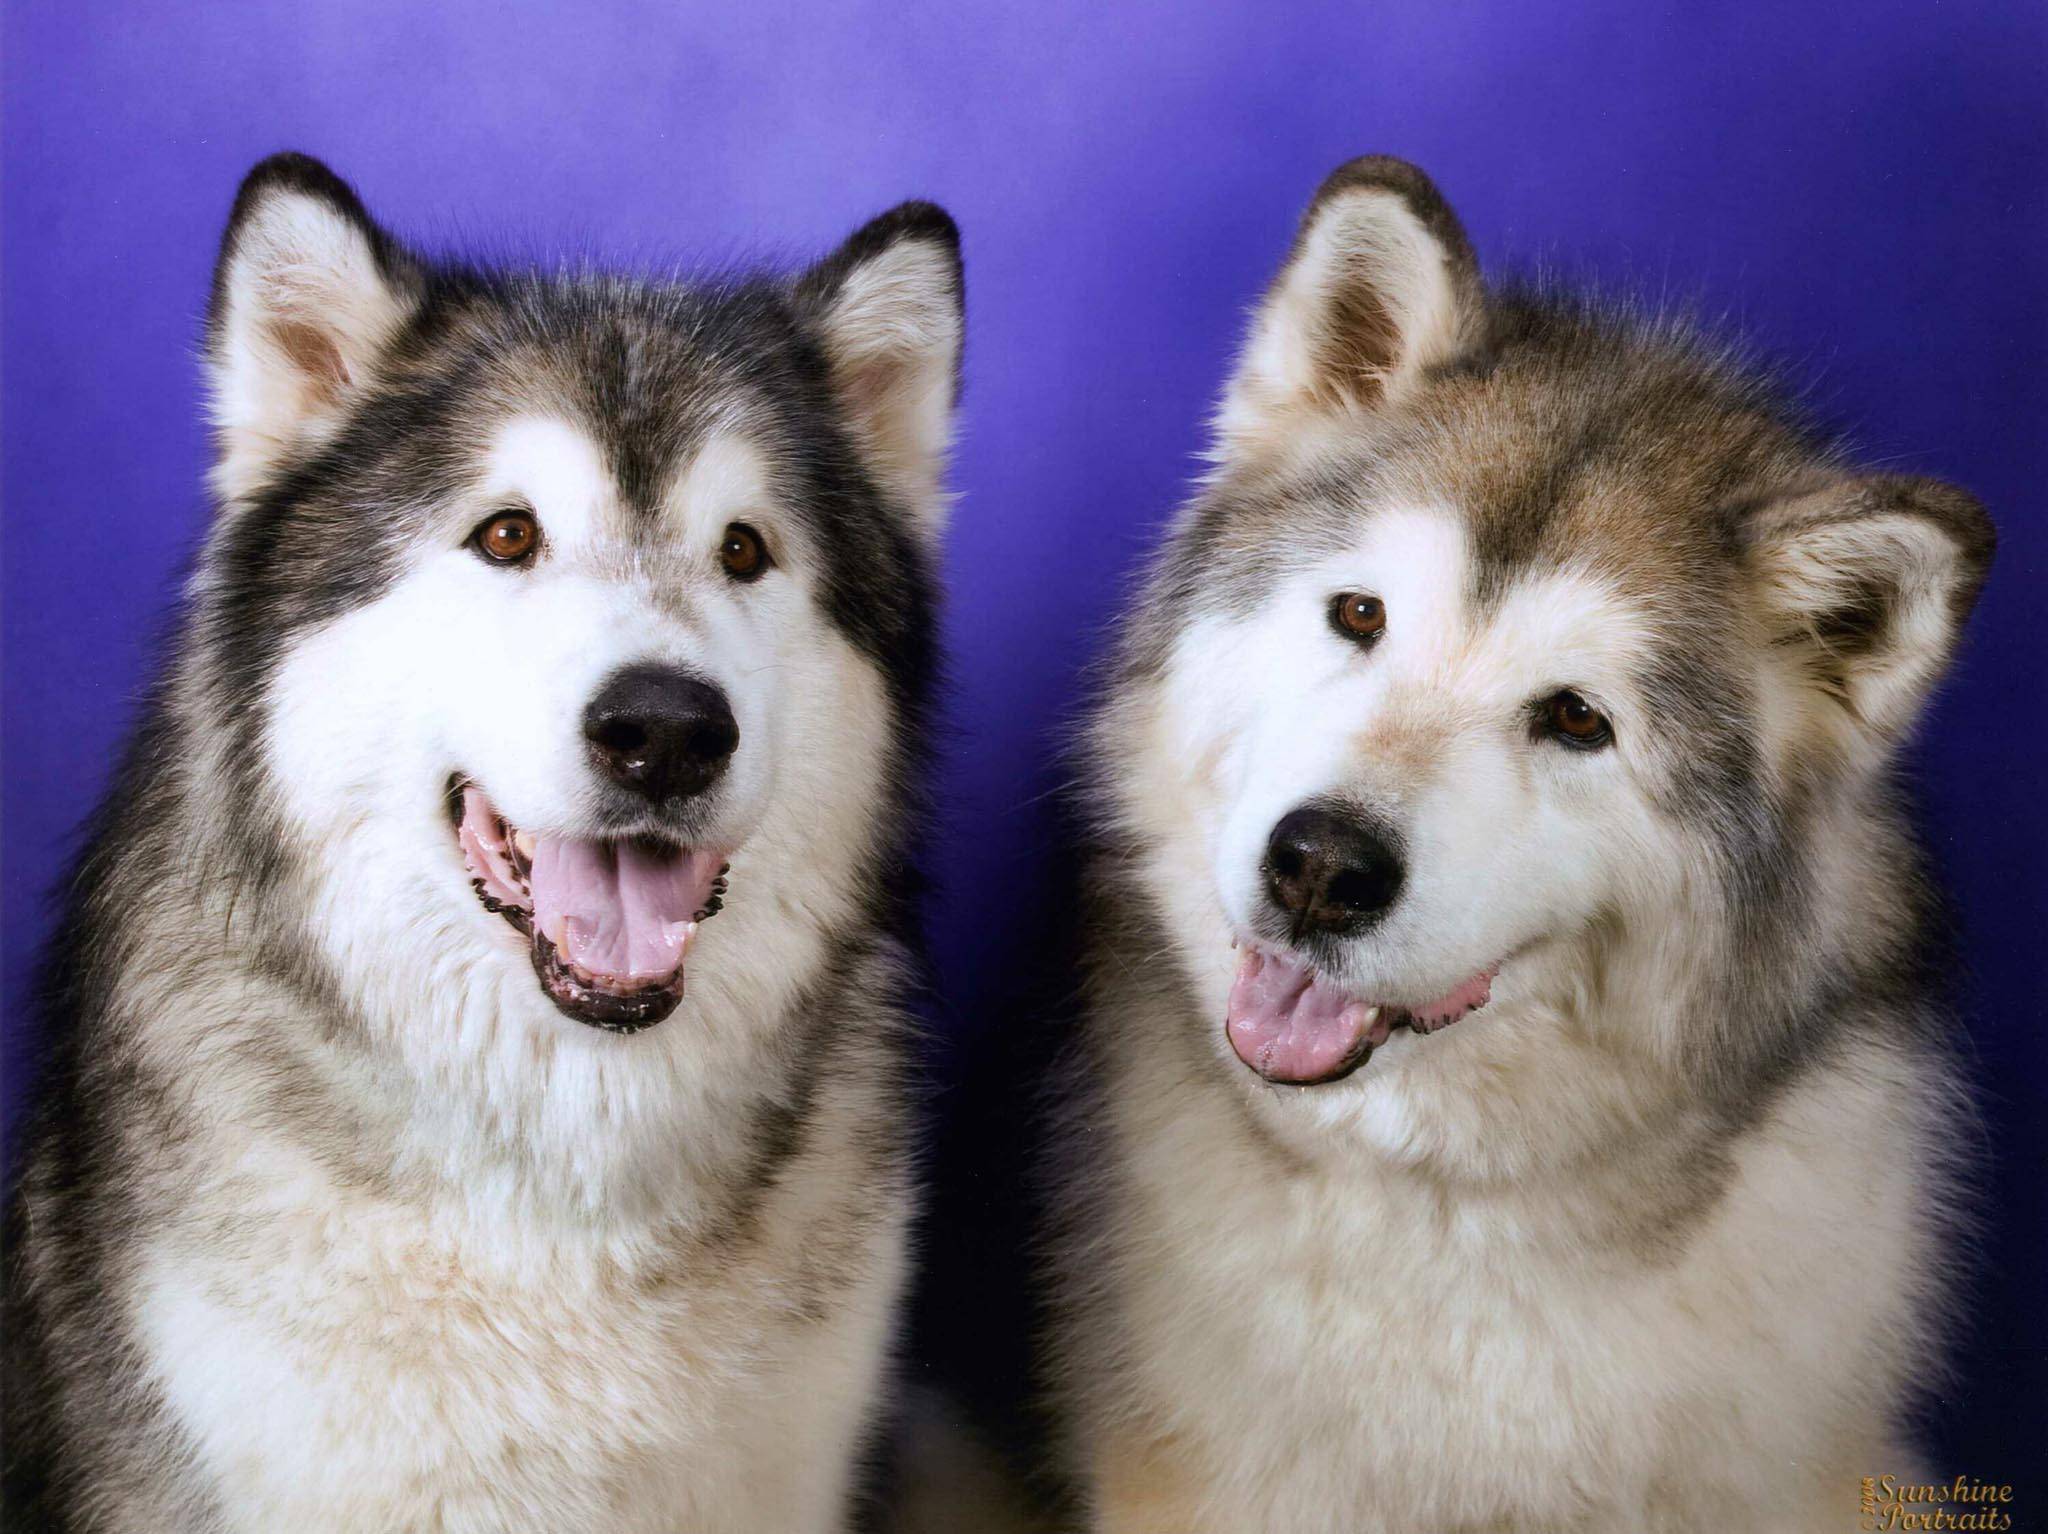 Хаски и лайки: как отличить собак по описанию и характеристике, цвету глаз при выборе голубоглазого щенка